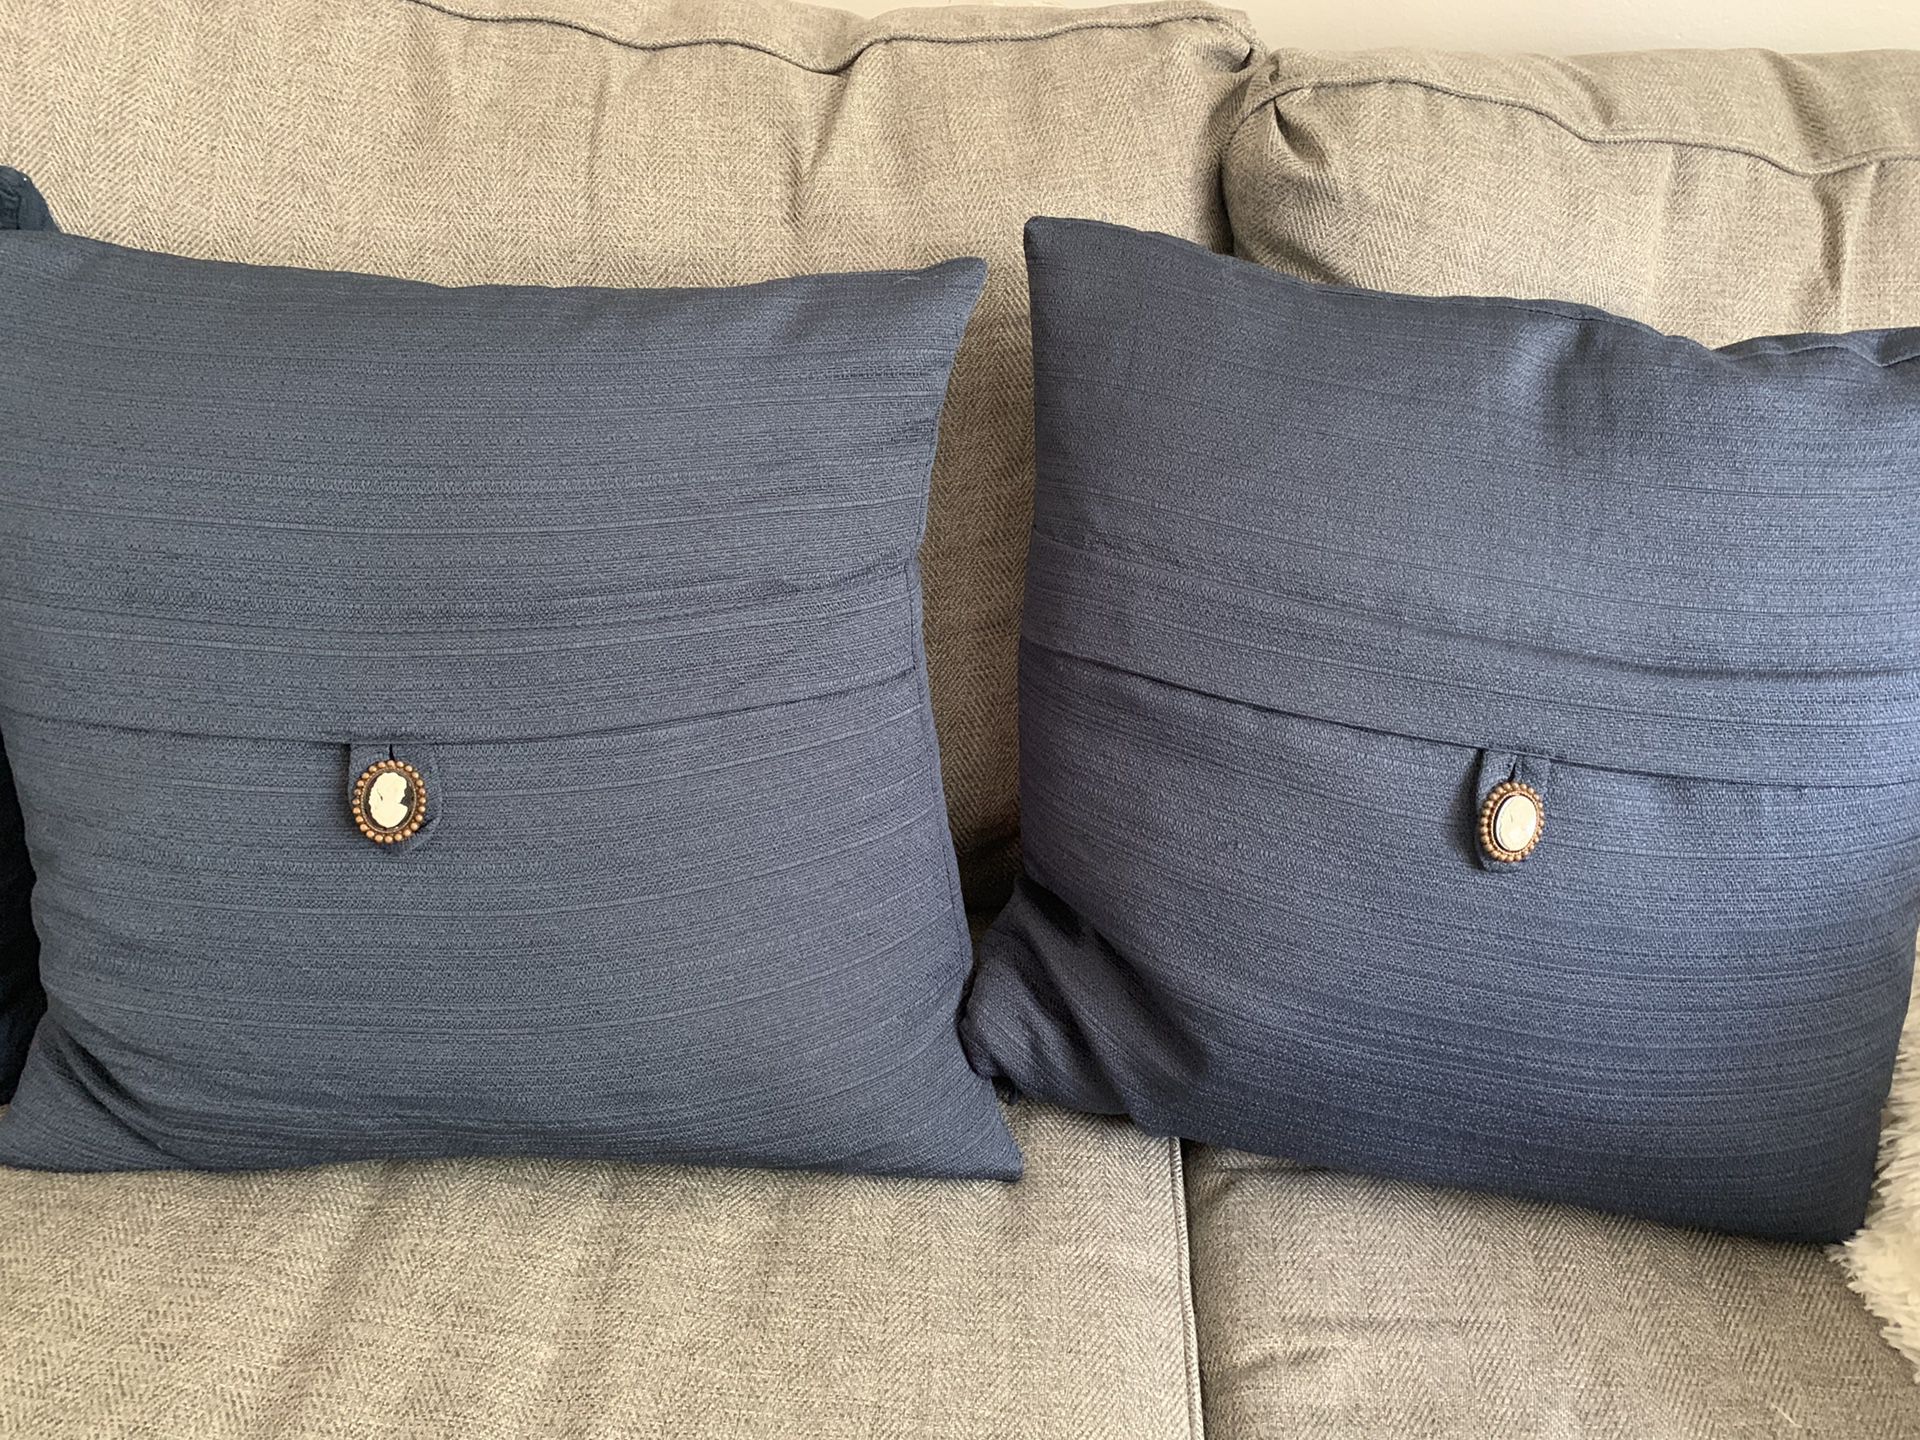 Navy blue pillows